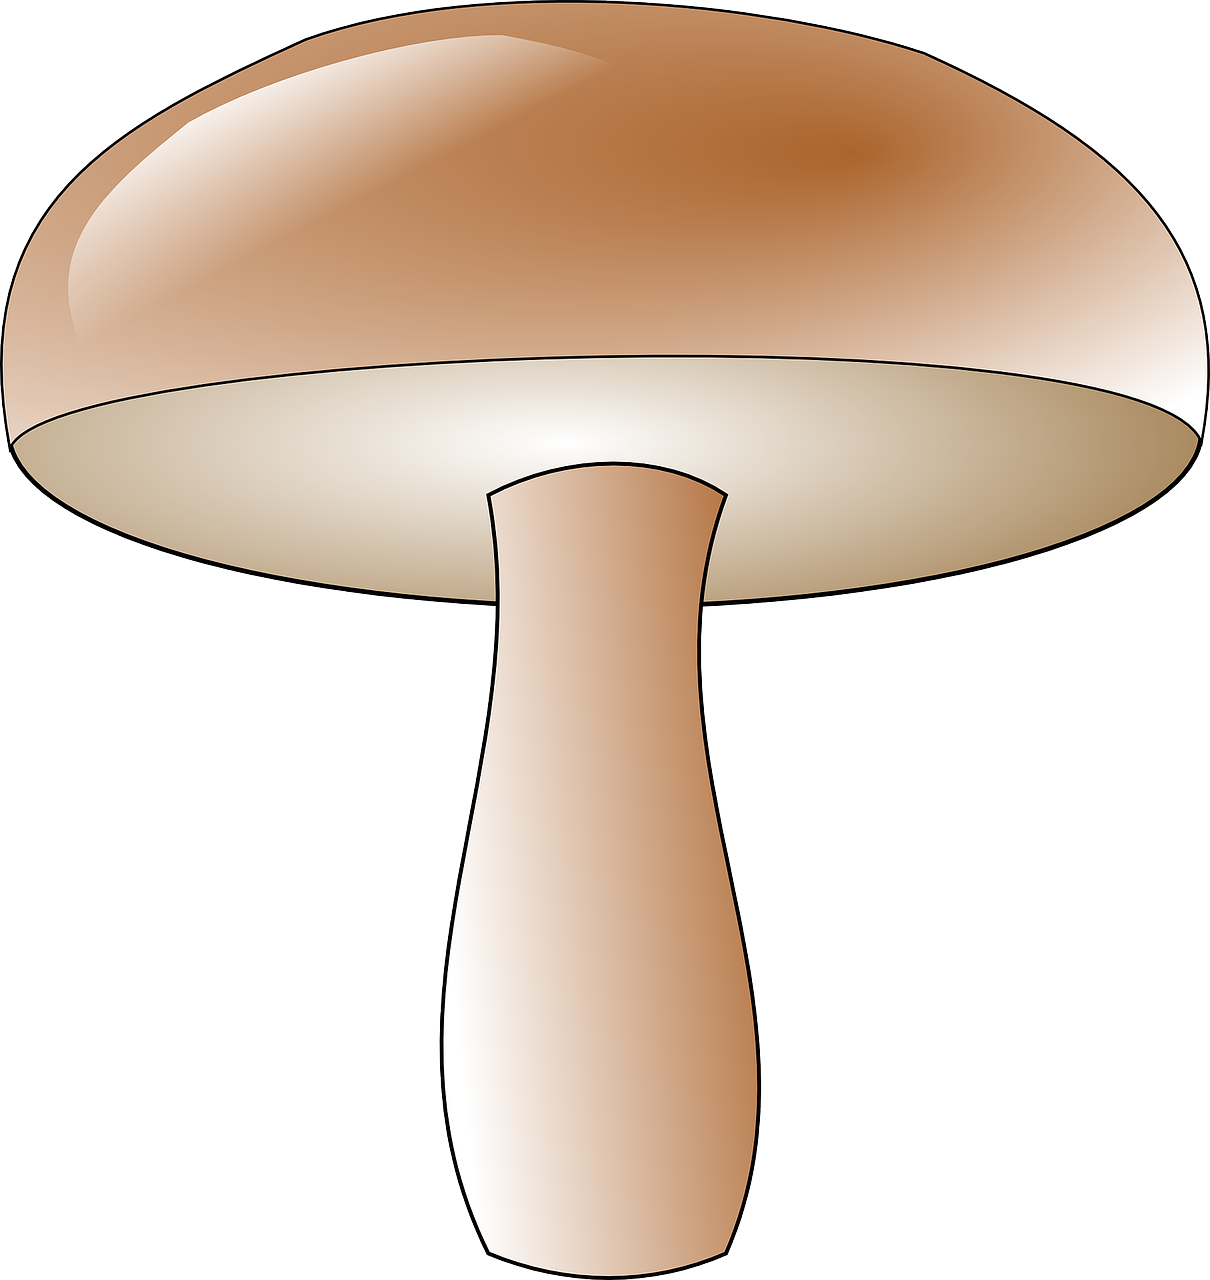 mushroom toadstool fungus free photo